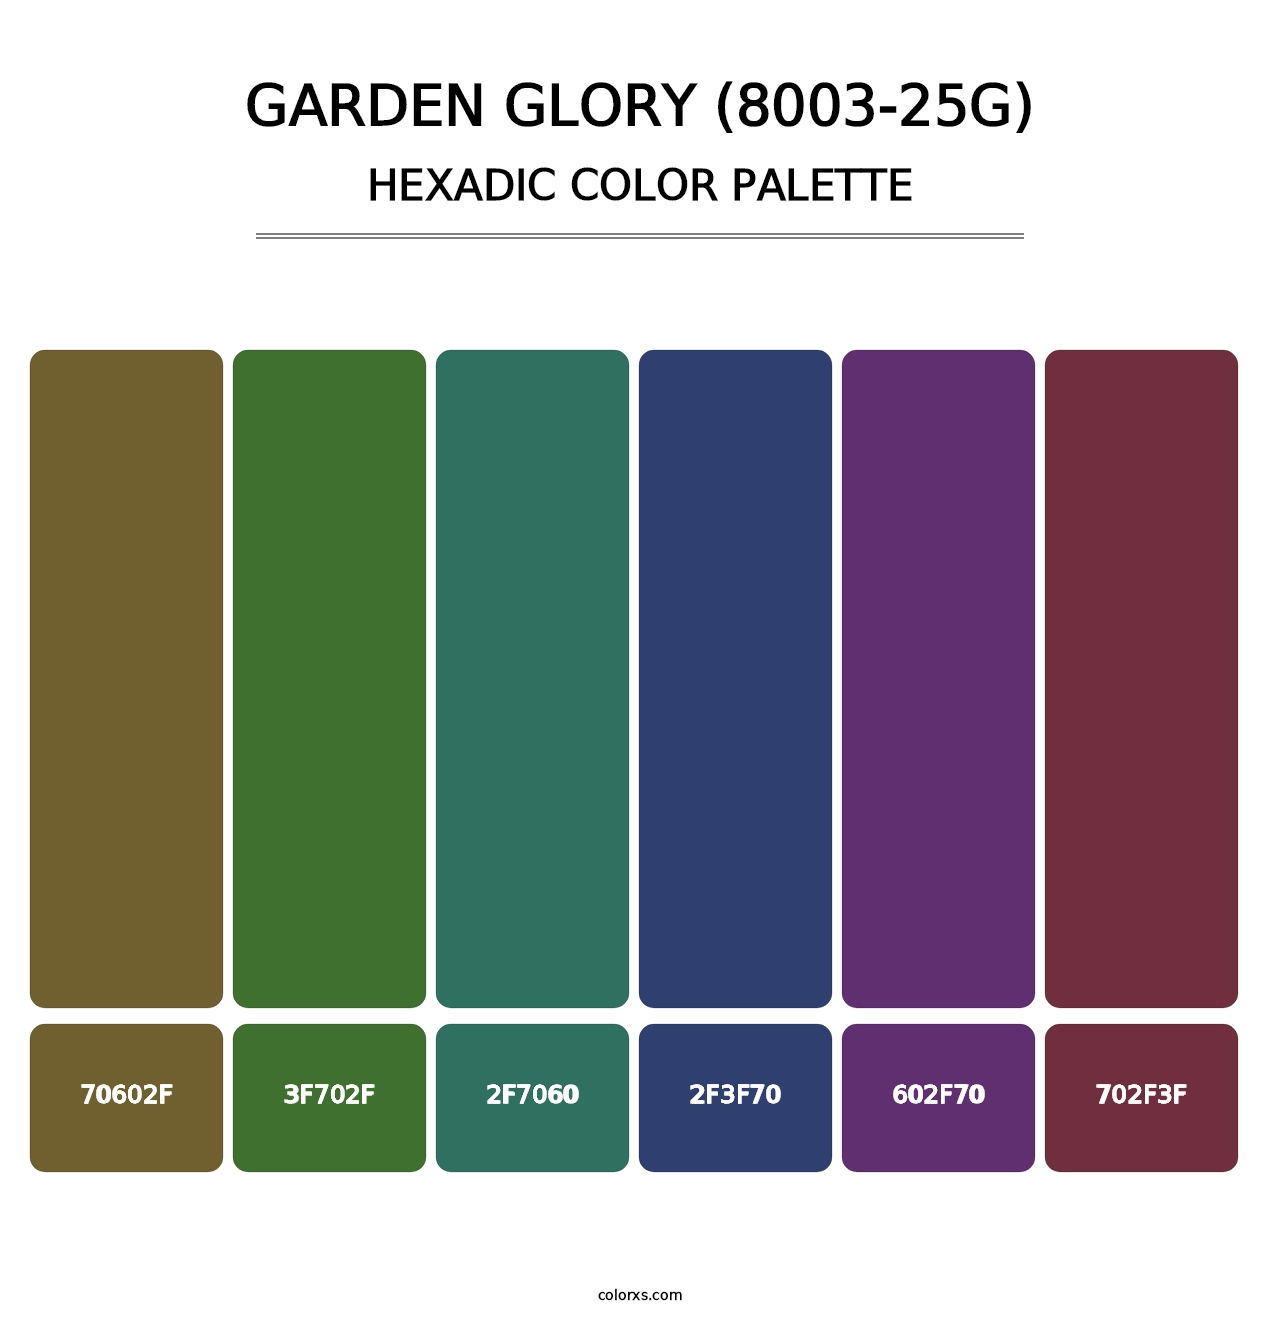 Garden Glory (8003-25G) - Hexadic Color Palette